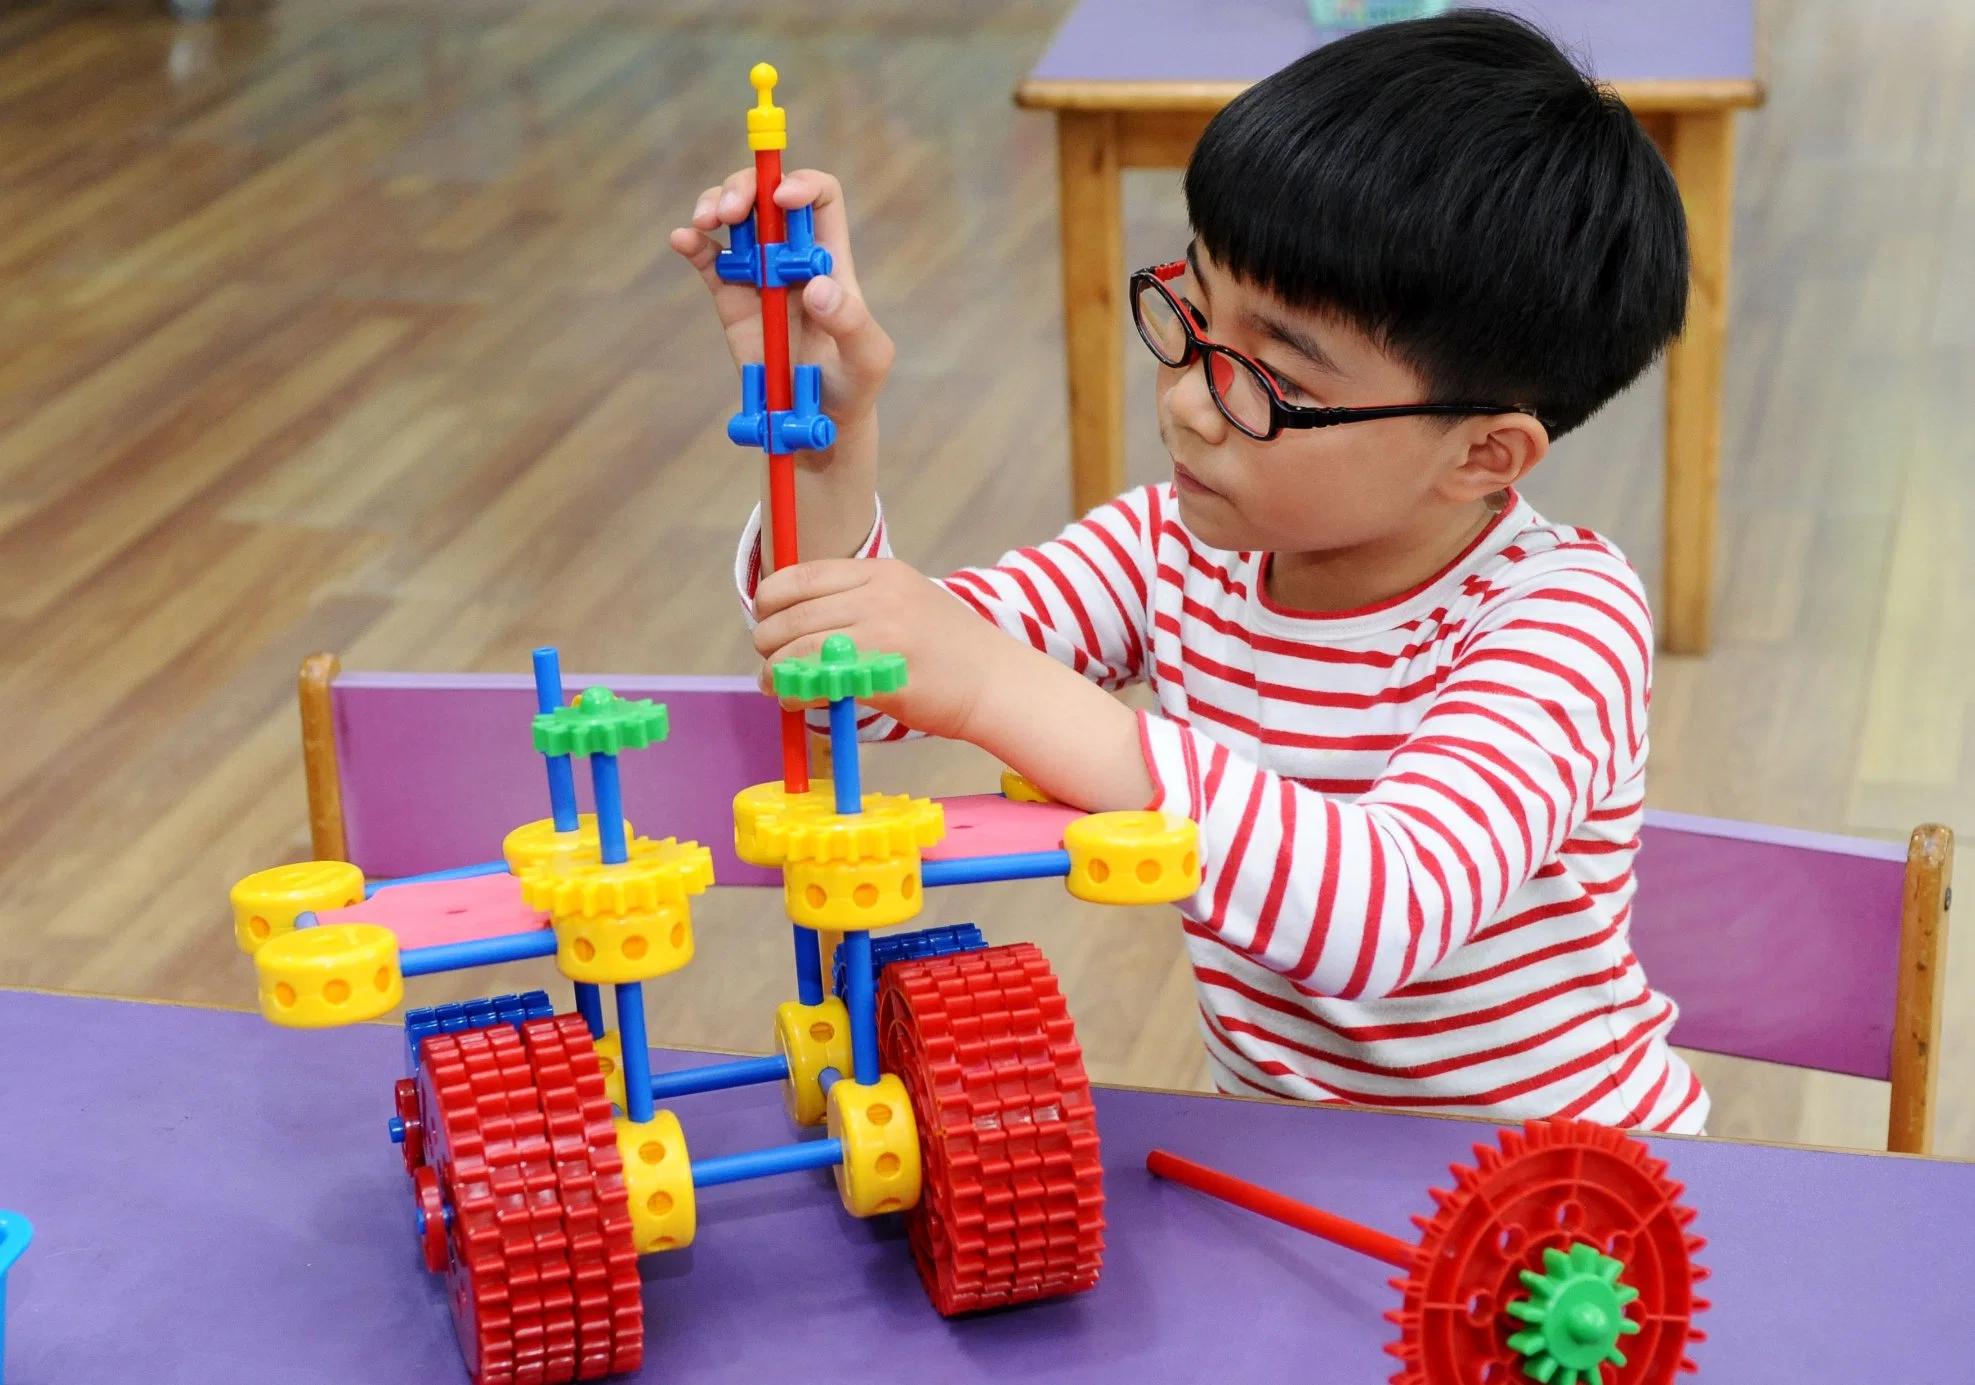 Kids DIY Toy Construction Building Block Educational Dream Park Toys